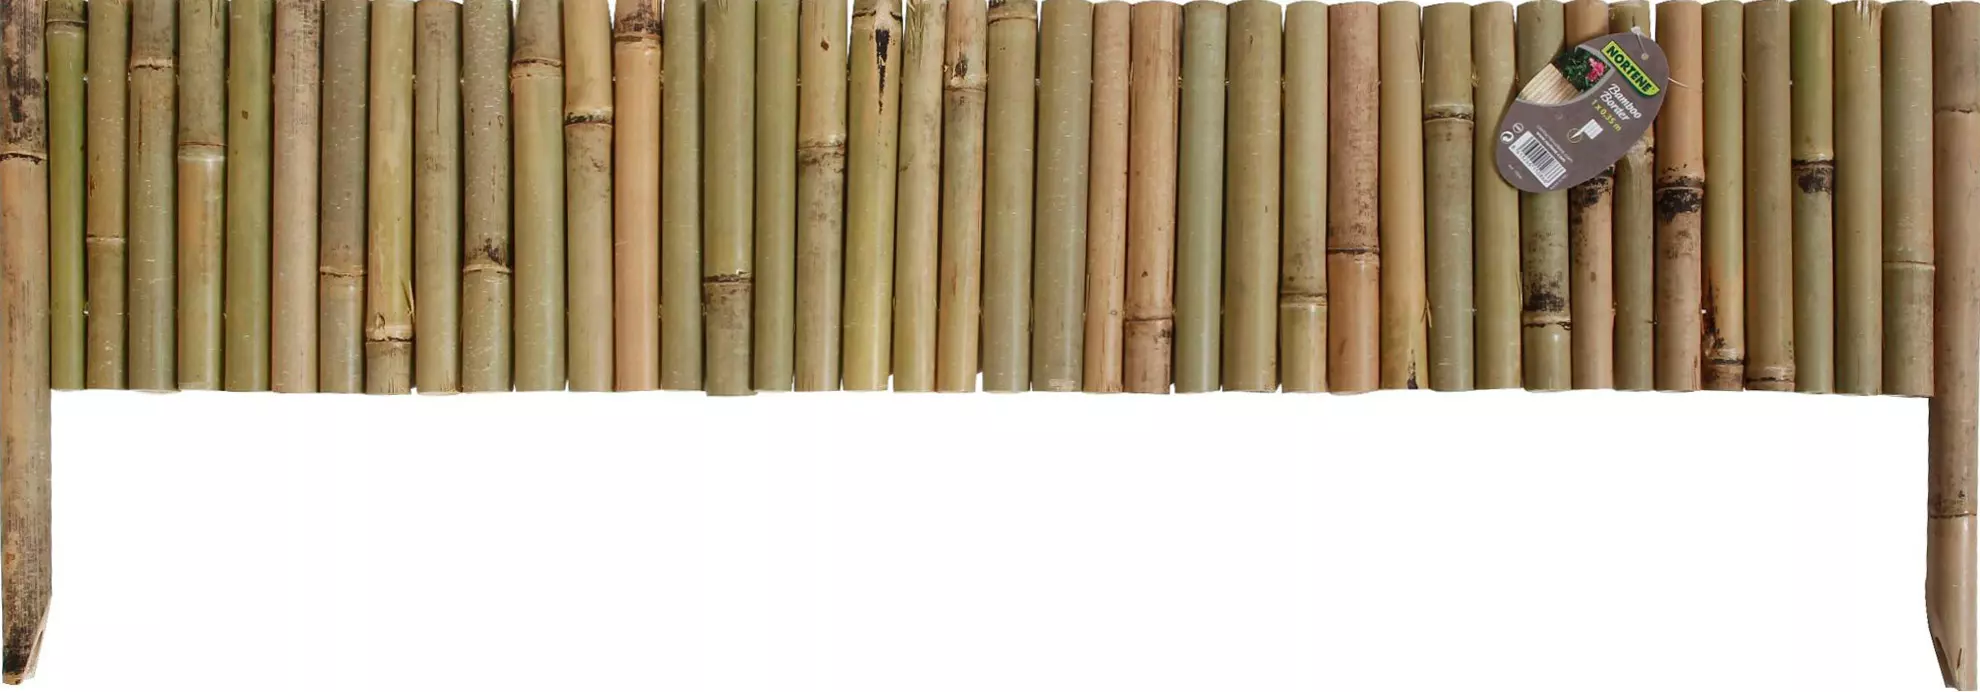 Nortene Bamboo border természetes bambusz ágyásszegély, 1m x 35 cm